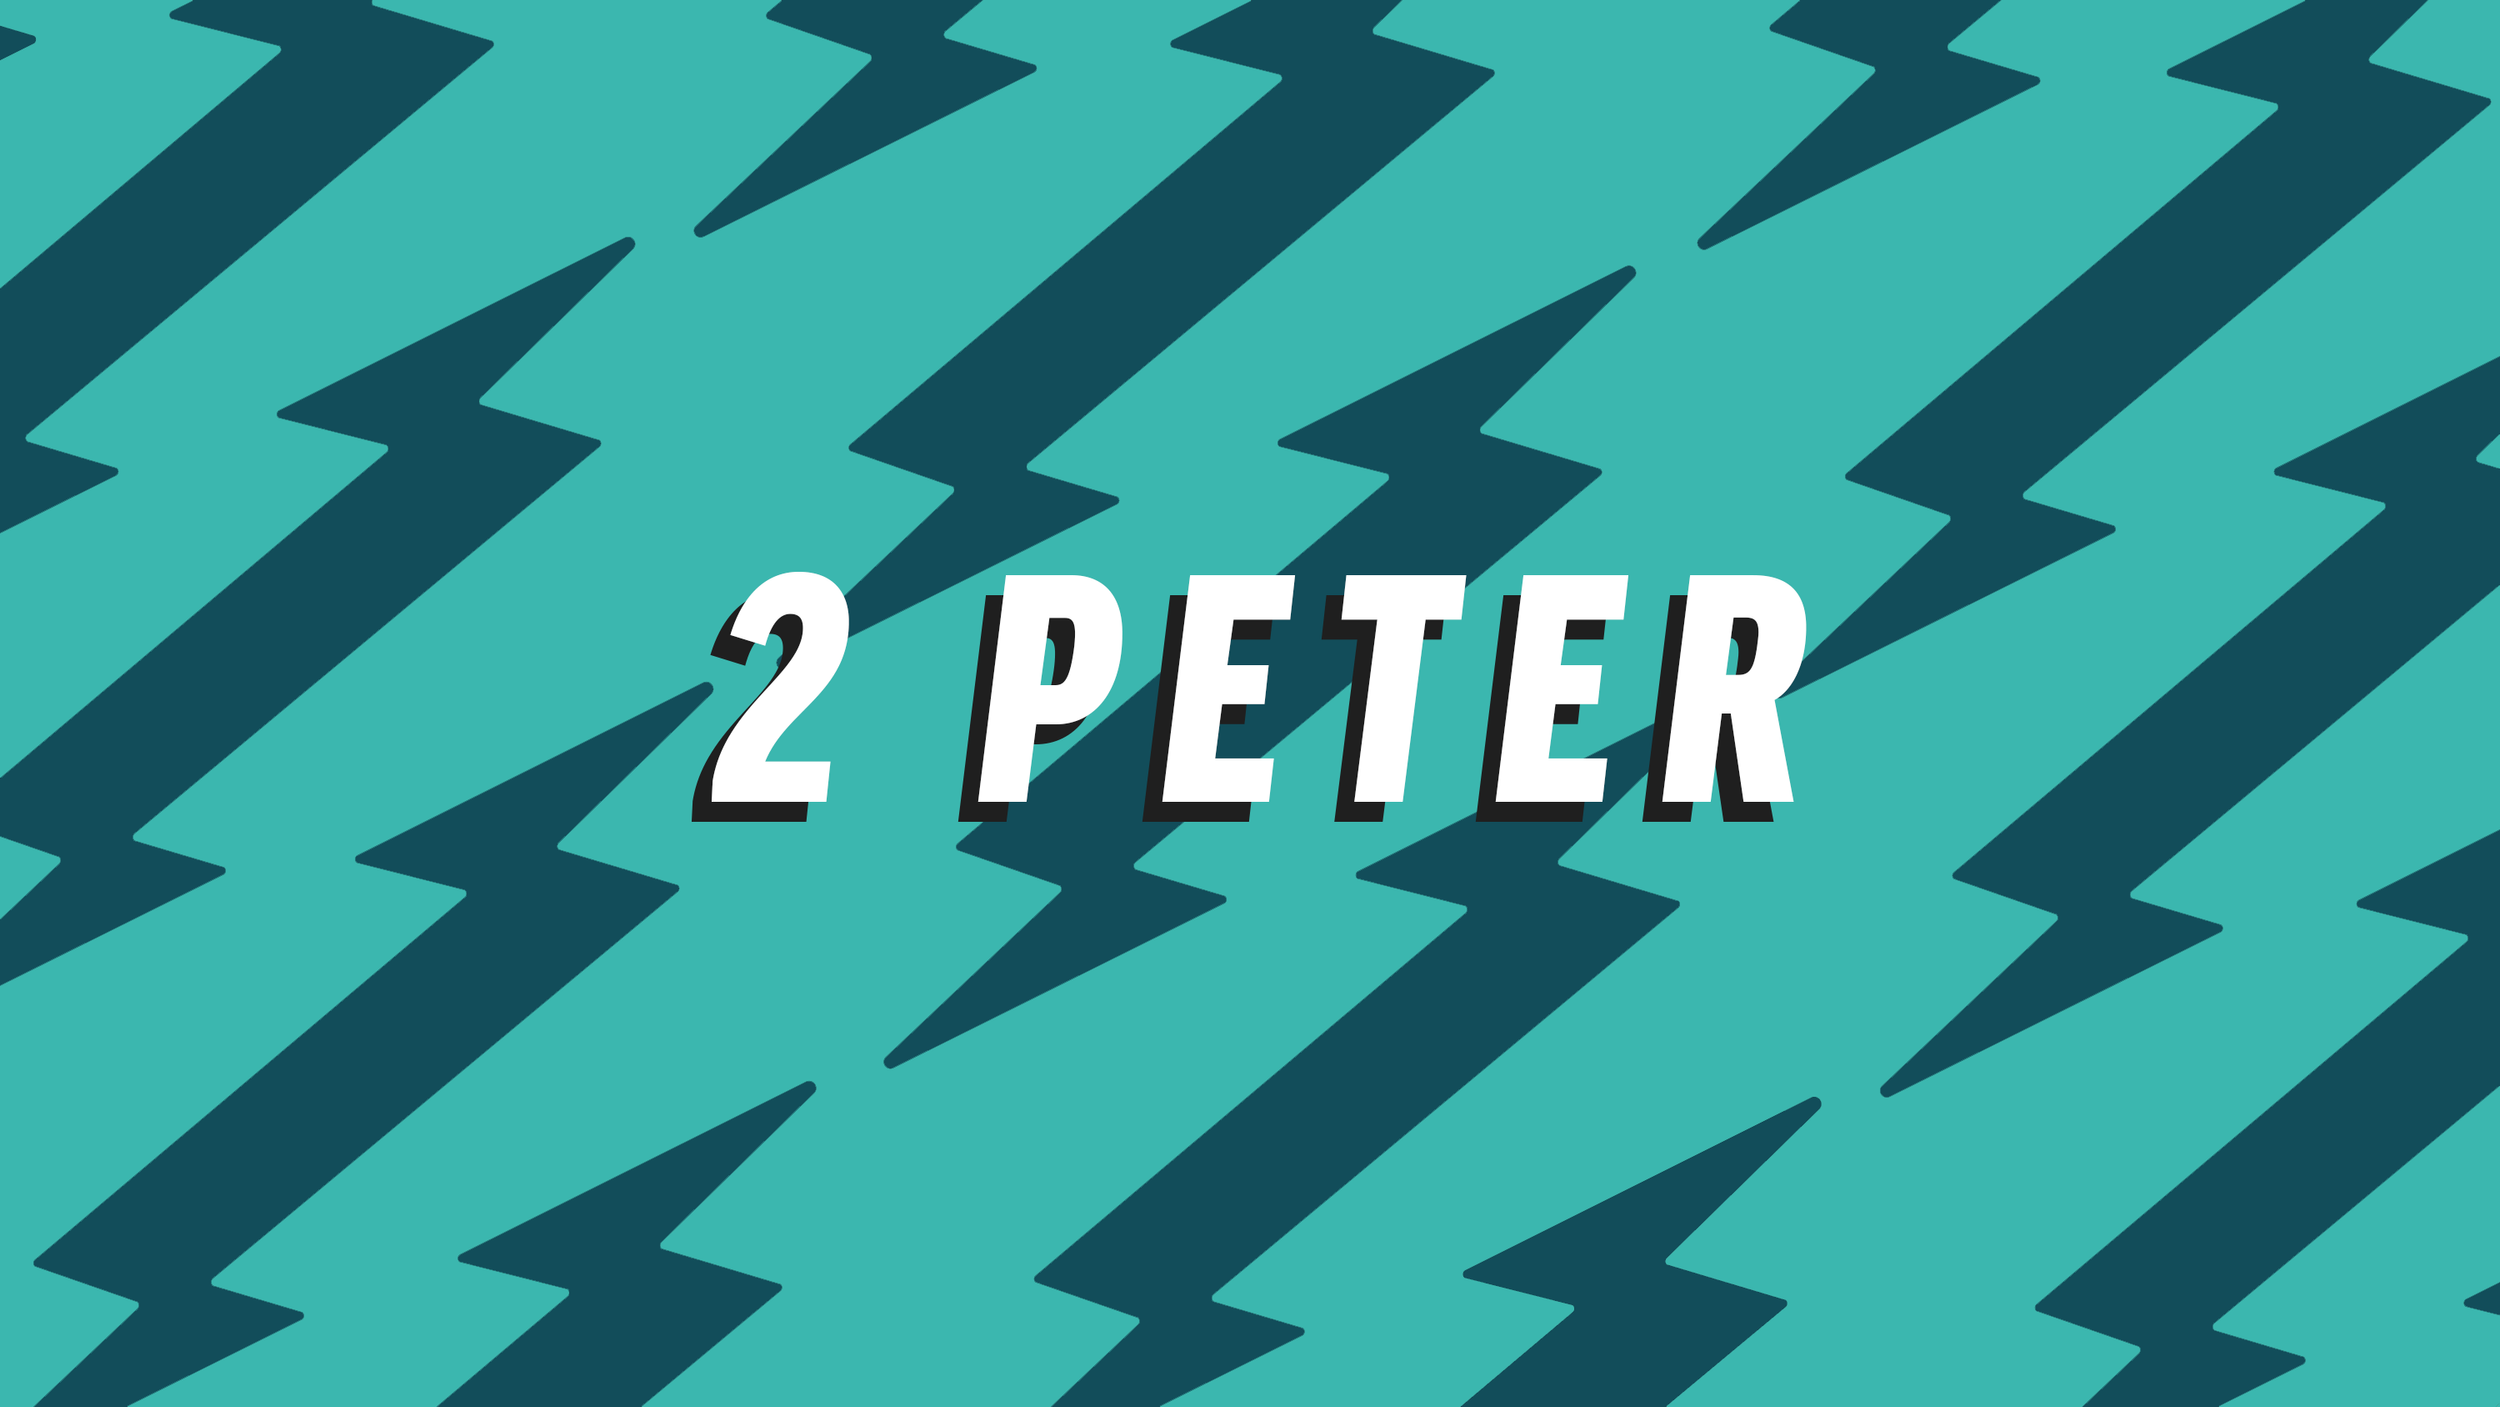 2 PETER.png